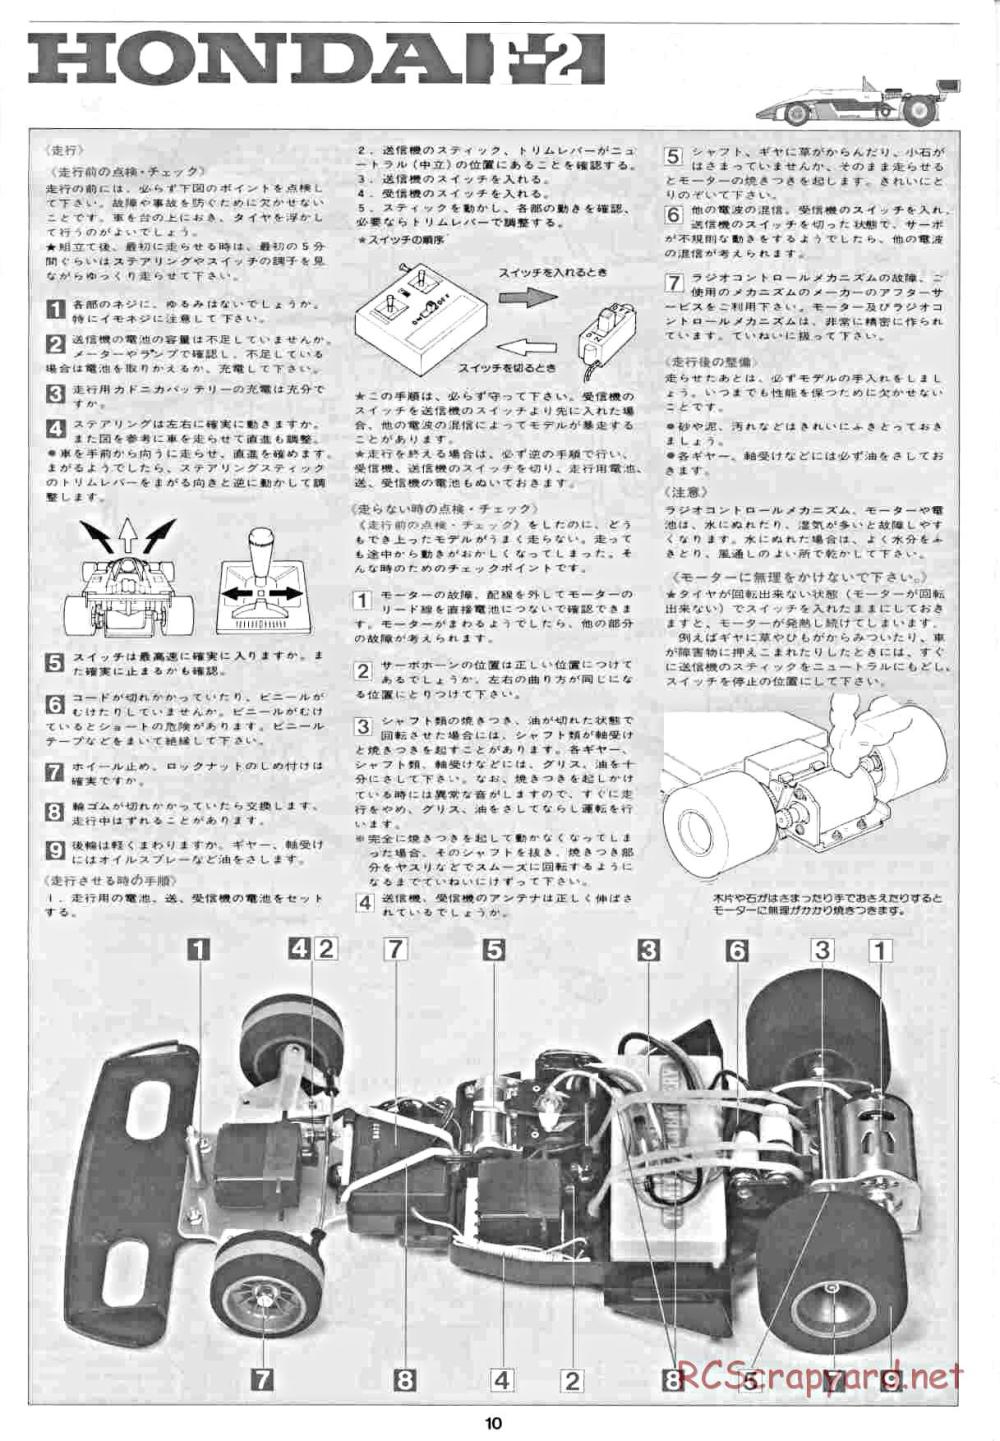 Tamiya - Honda F2 (CS) - 58030 - Manual - Page 10